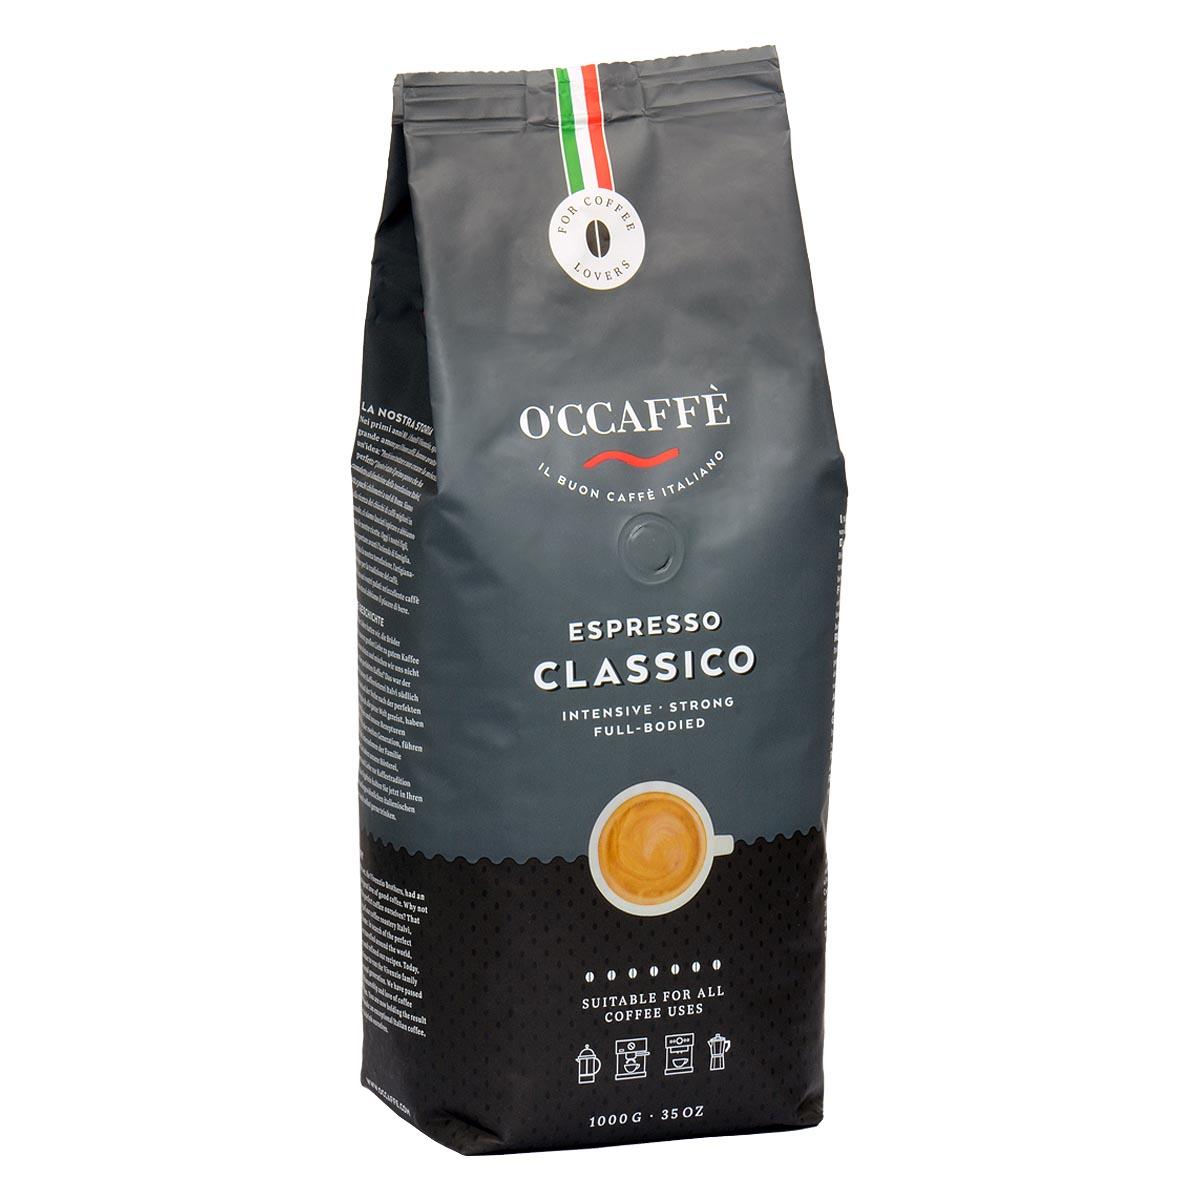 Caffe Vergnano Espresso Classico 600 Whole Beans Coffee 2.2lb/1kg